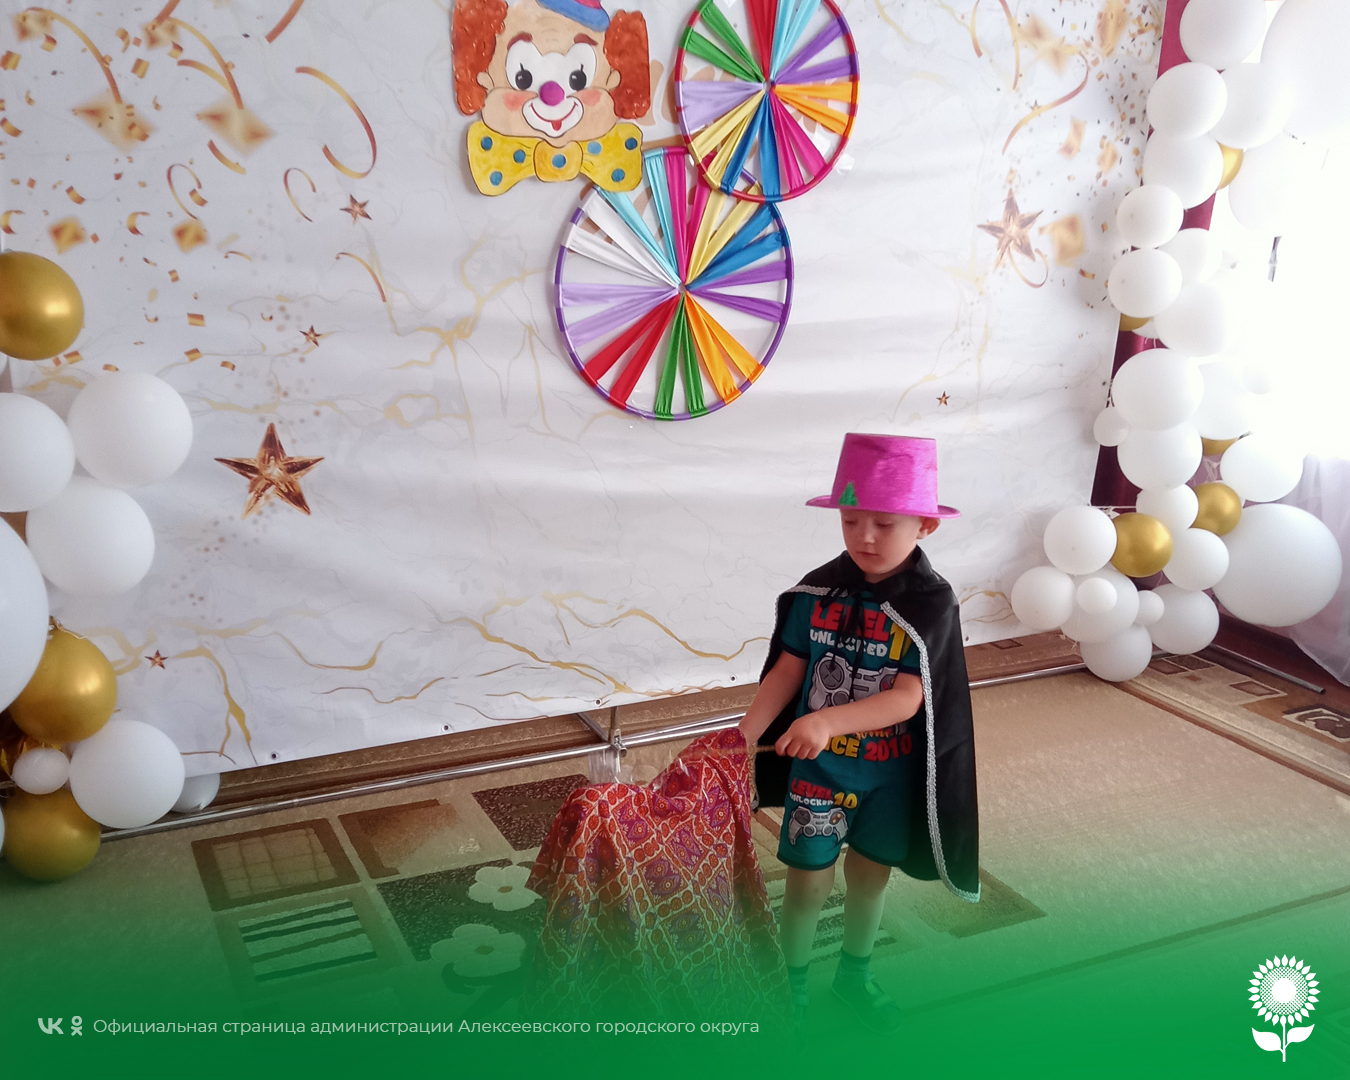 В детских садах Алексеевского городского округа прошли увлекательные развлечения, приуроченные ко Дню фокусов.